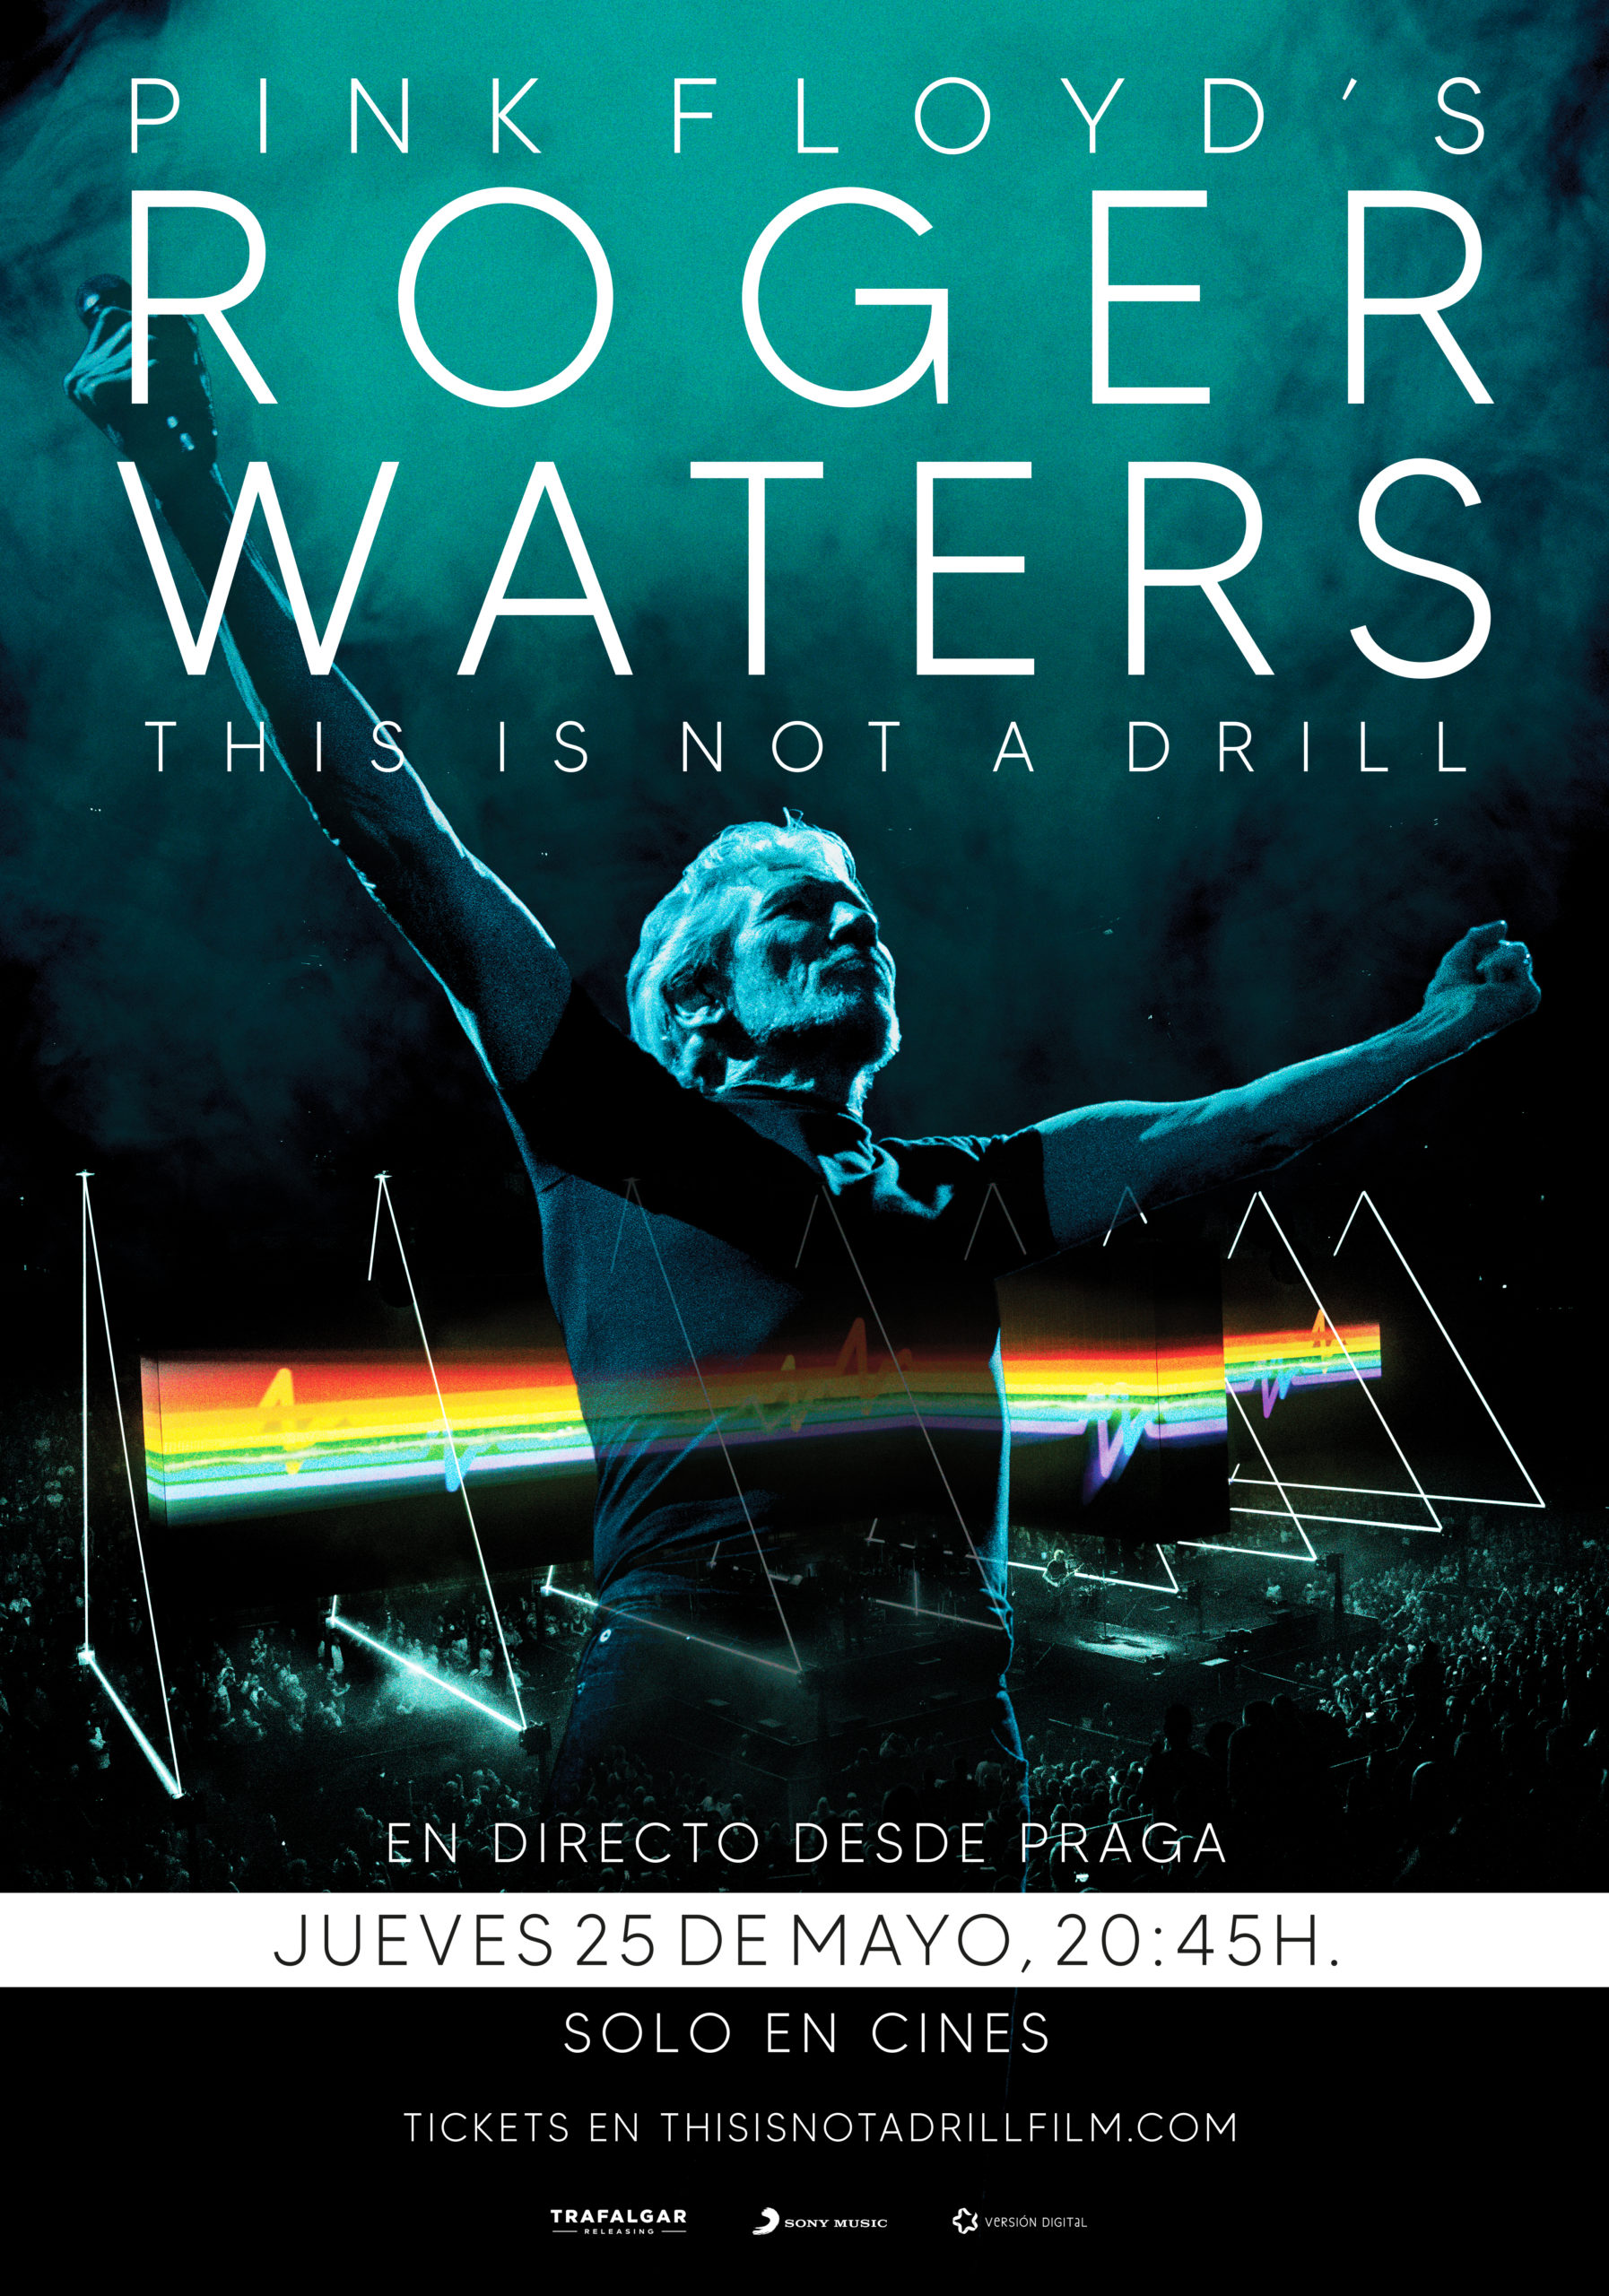 El próximo concierto de ROGER WATERS en PRAGA se emitirá en directo en cines de España